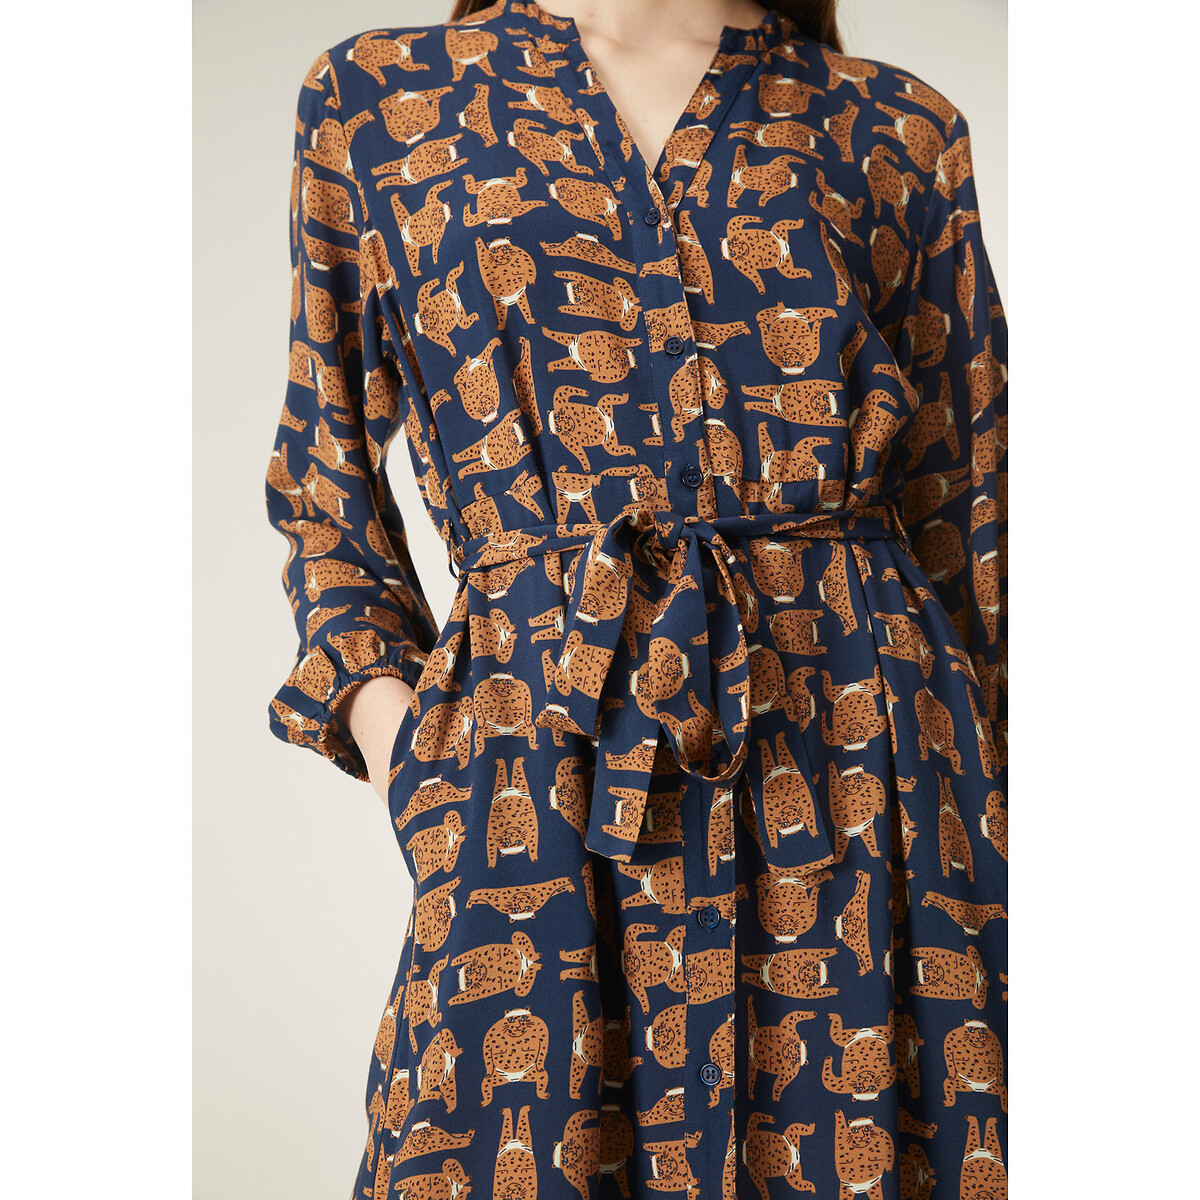 Платье Длинное с анималистичным принтом с ремешком XL синий LaRedoute, размер XL - фото 4